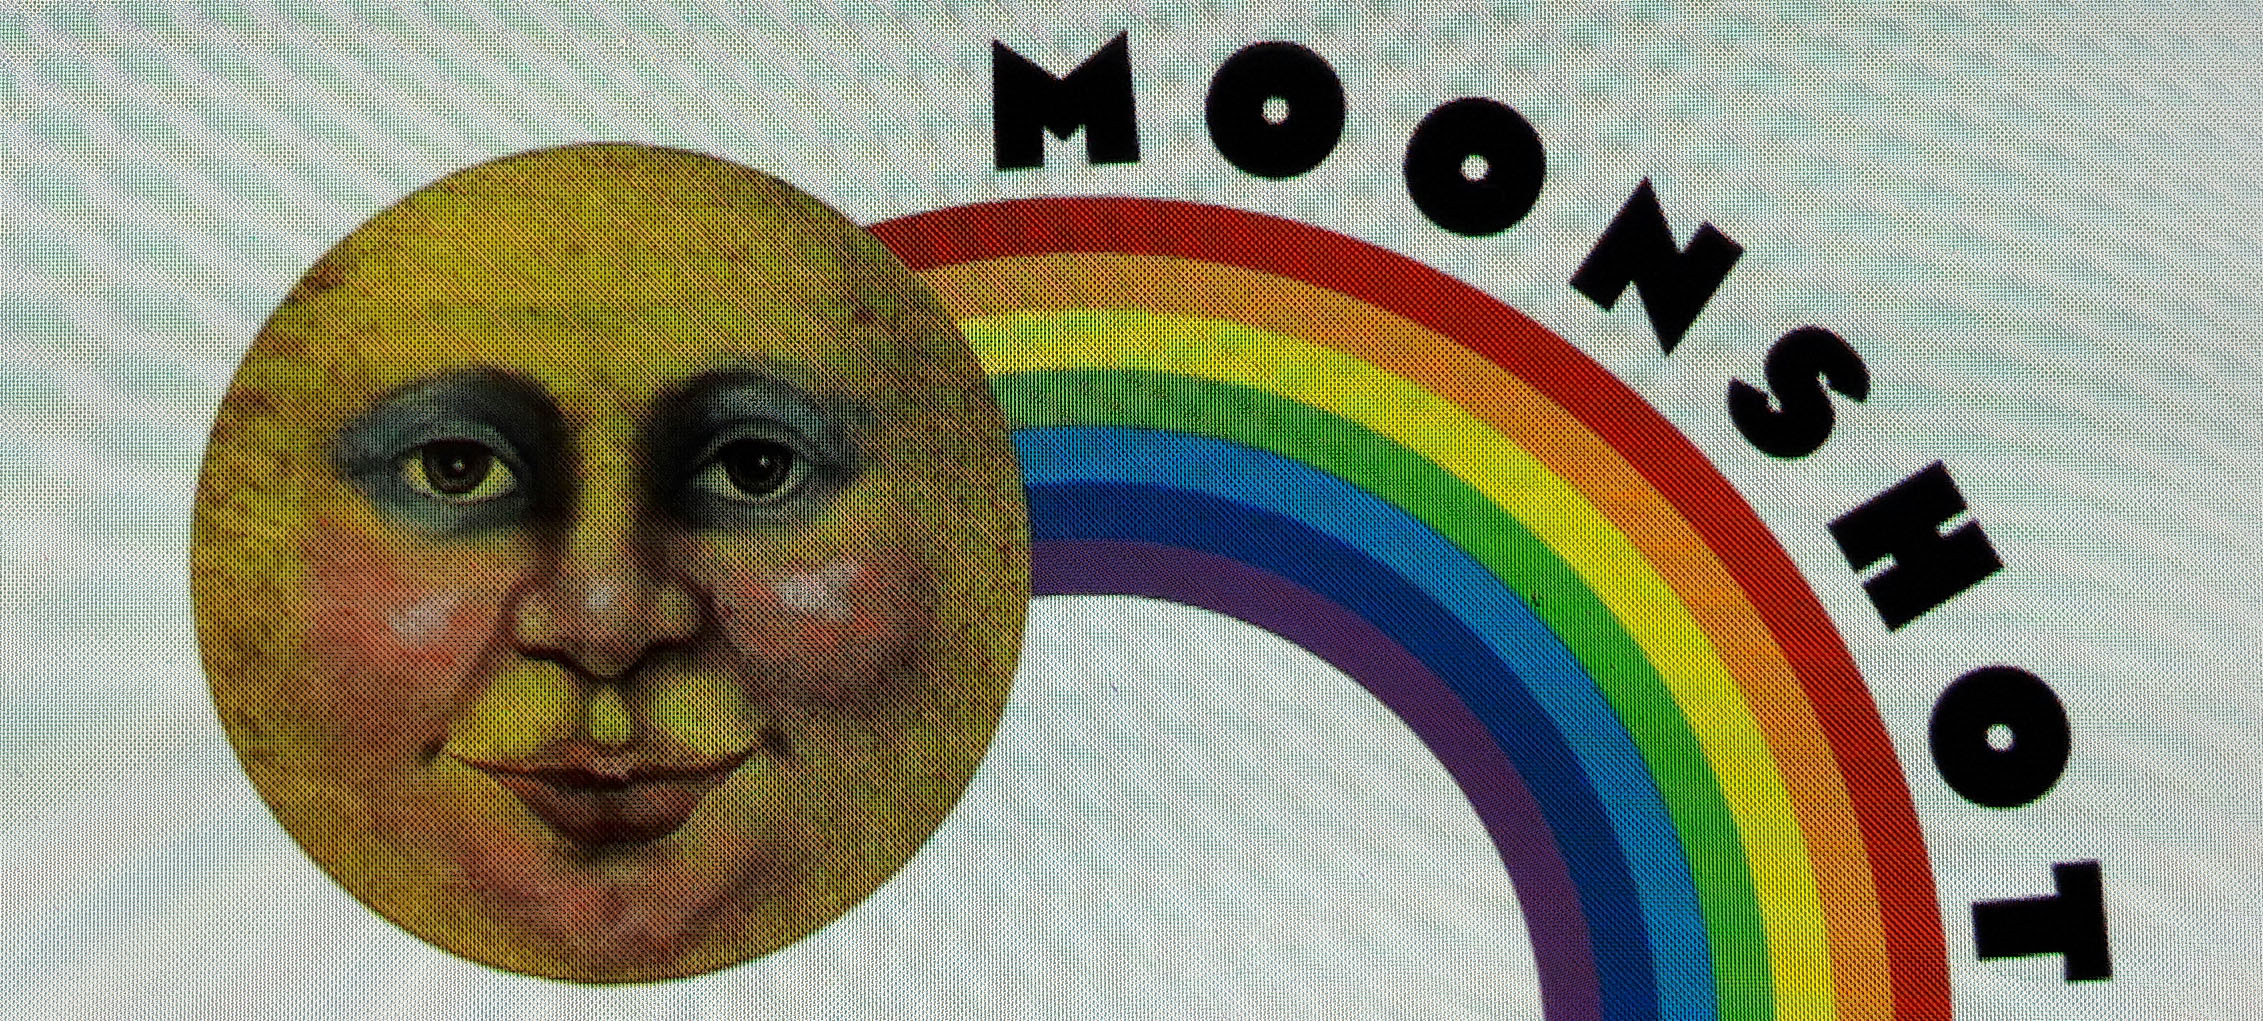 moonshot-header-cropped